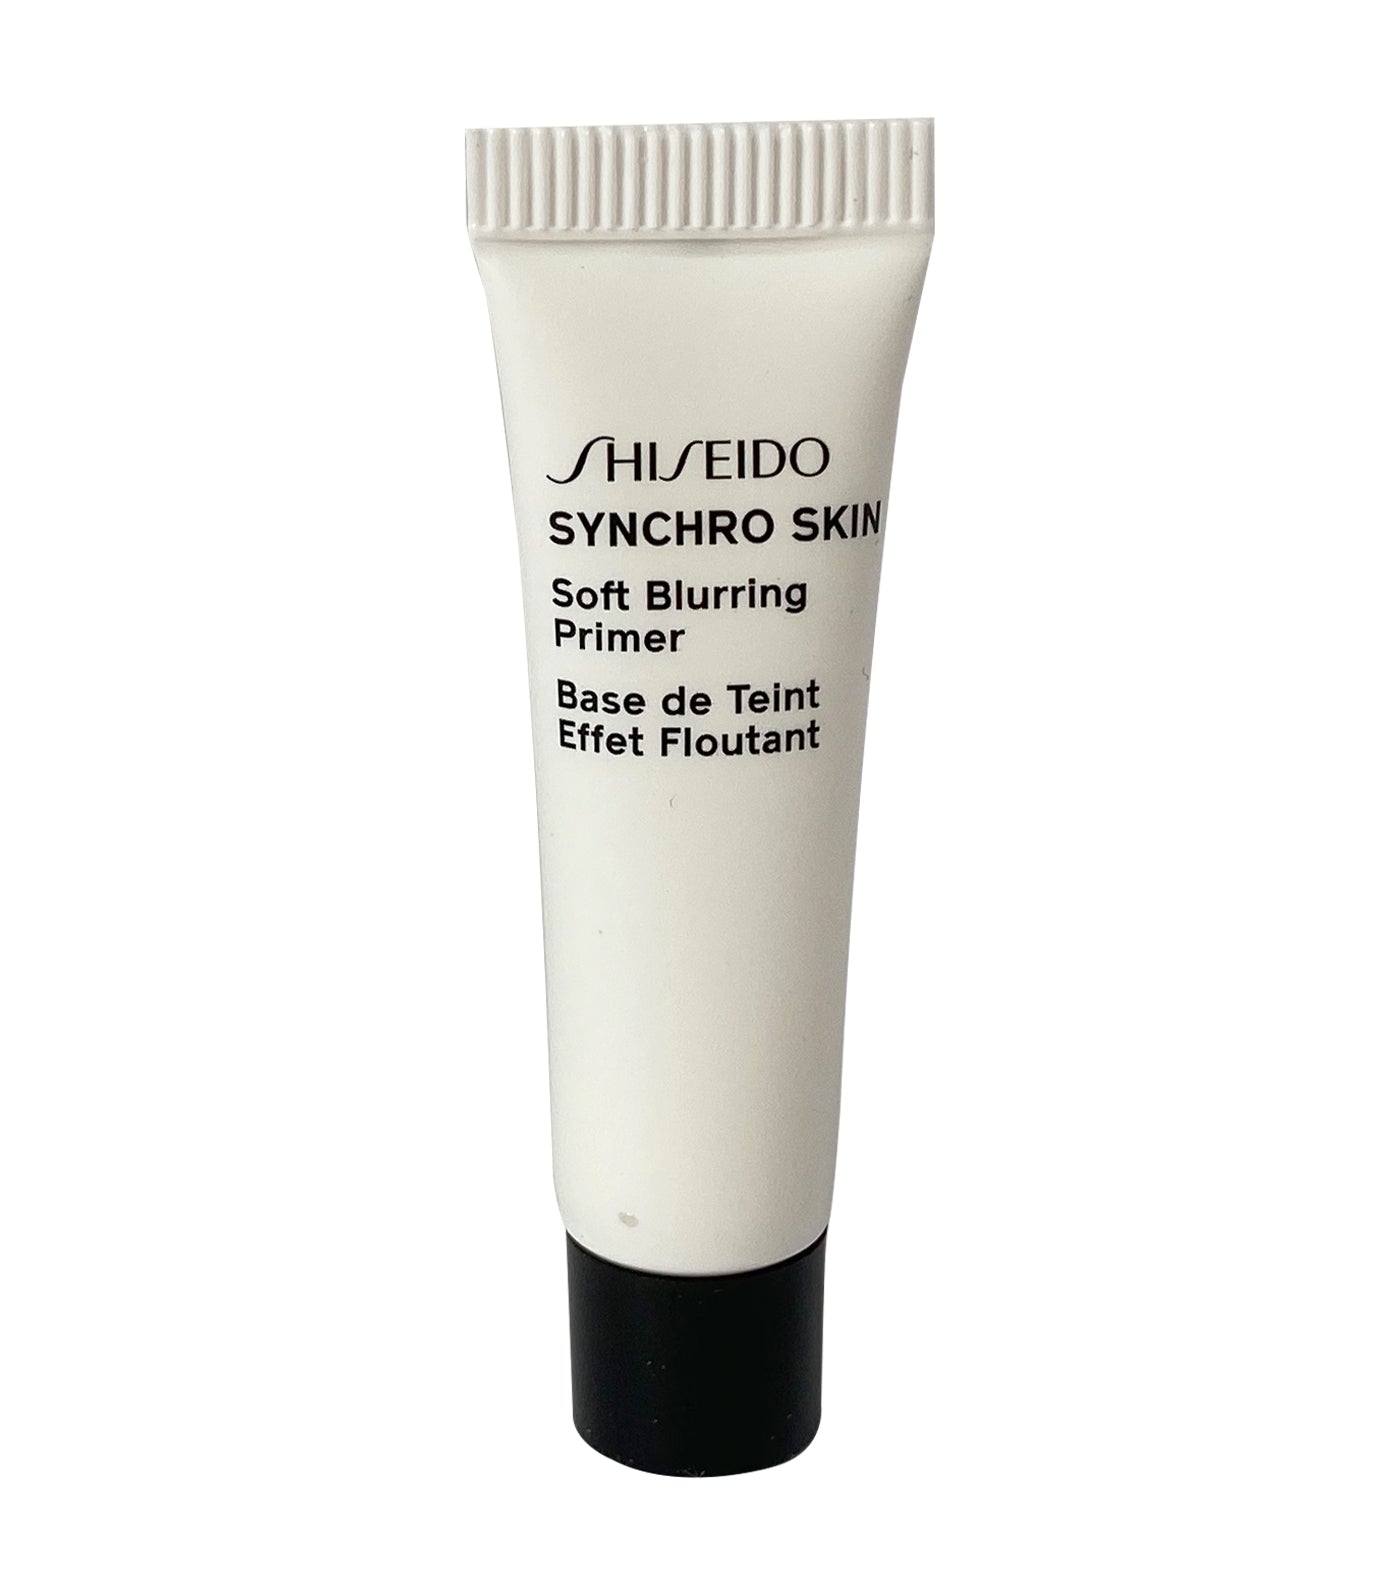 Shiseido Free Deluxe-sized Synchro Skin Soft Blurring Primer